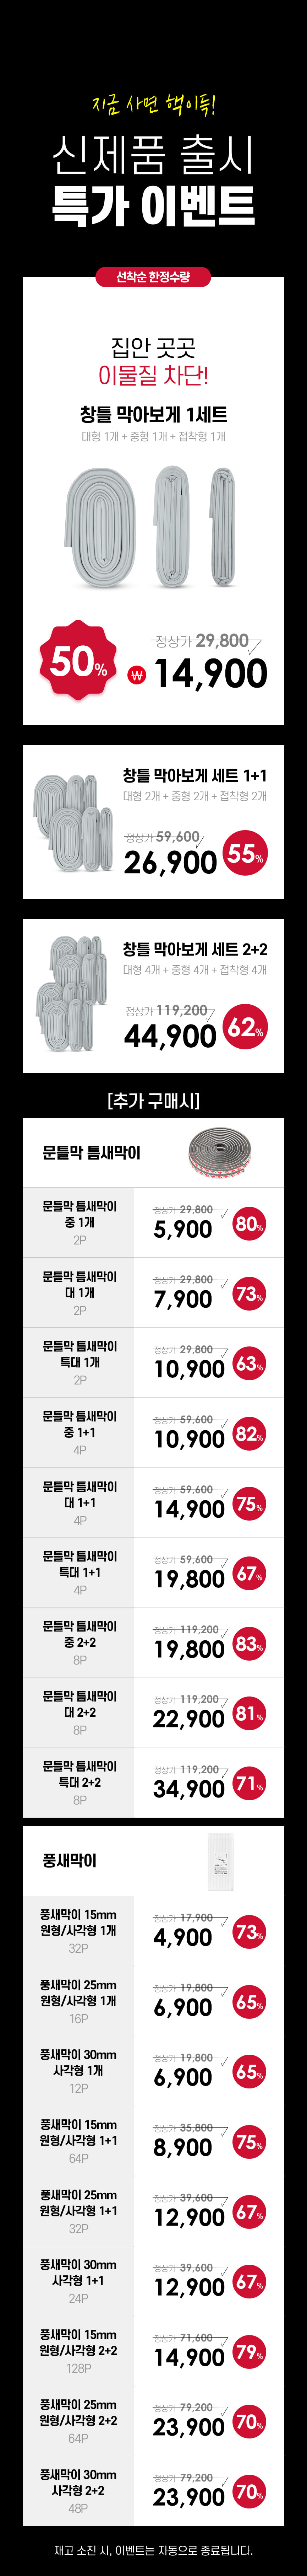 240403_가격정보_문구수정_비시즌